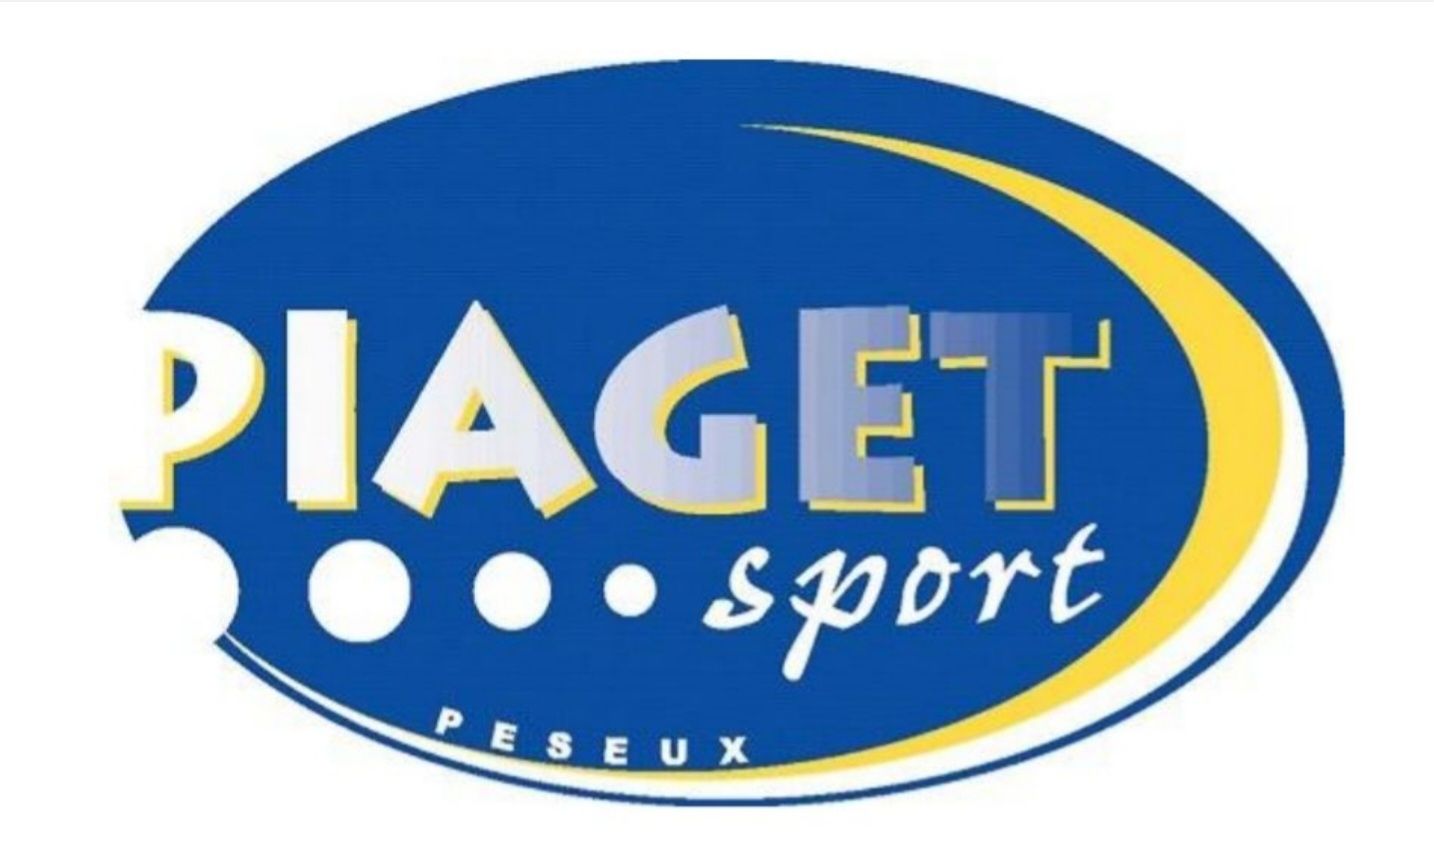 Piaget Sport